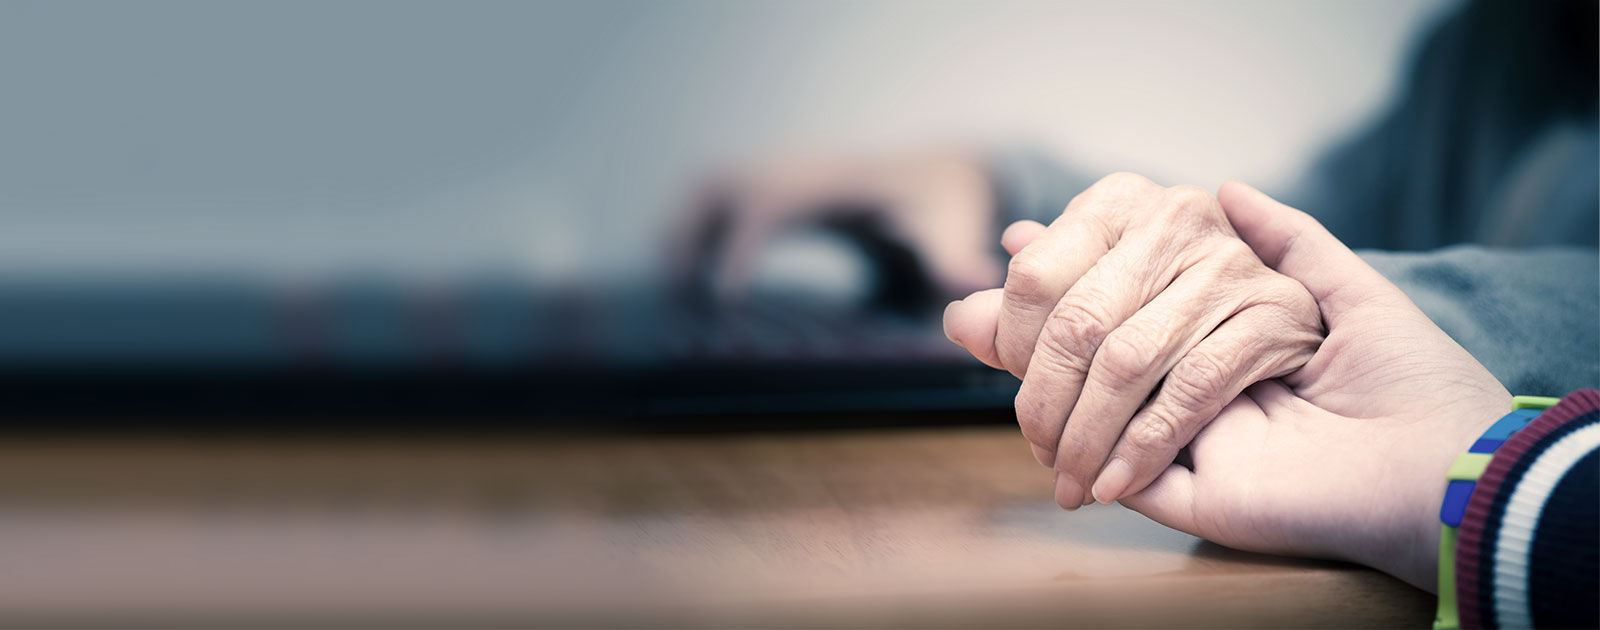 jüngere Hand hält ältere Hand 24-stunden-betreuung durch polnische pflegekräfte